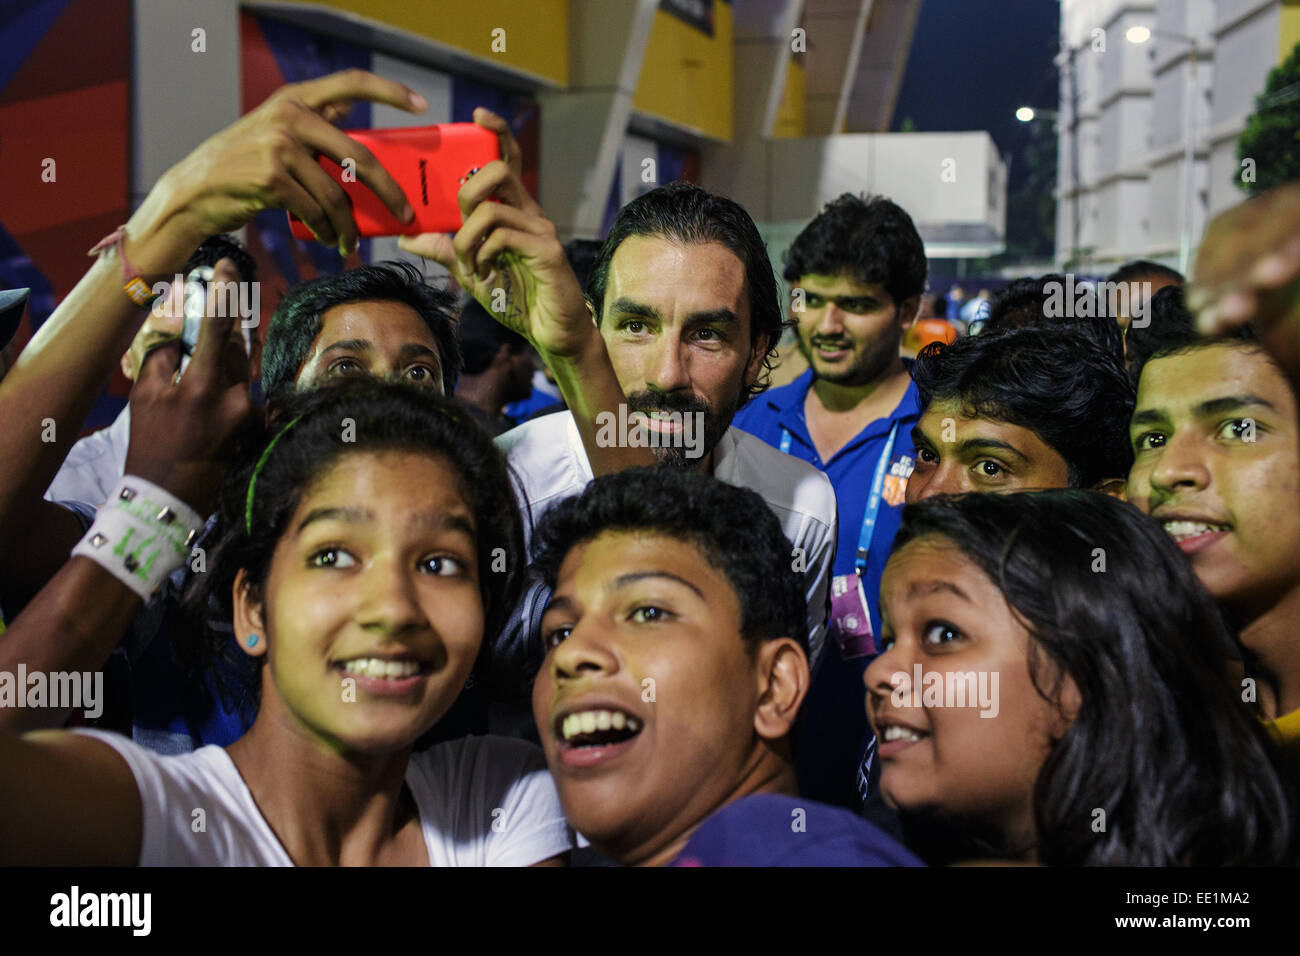 Robert Pires pose pour des photos avec les jeunes fans Indiens après un Indien Super League football match à Margao, Goa. Banque D'Images